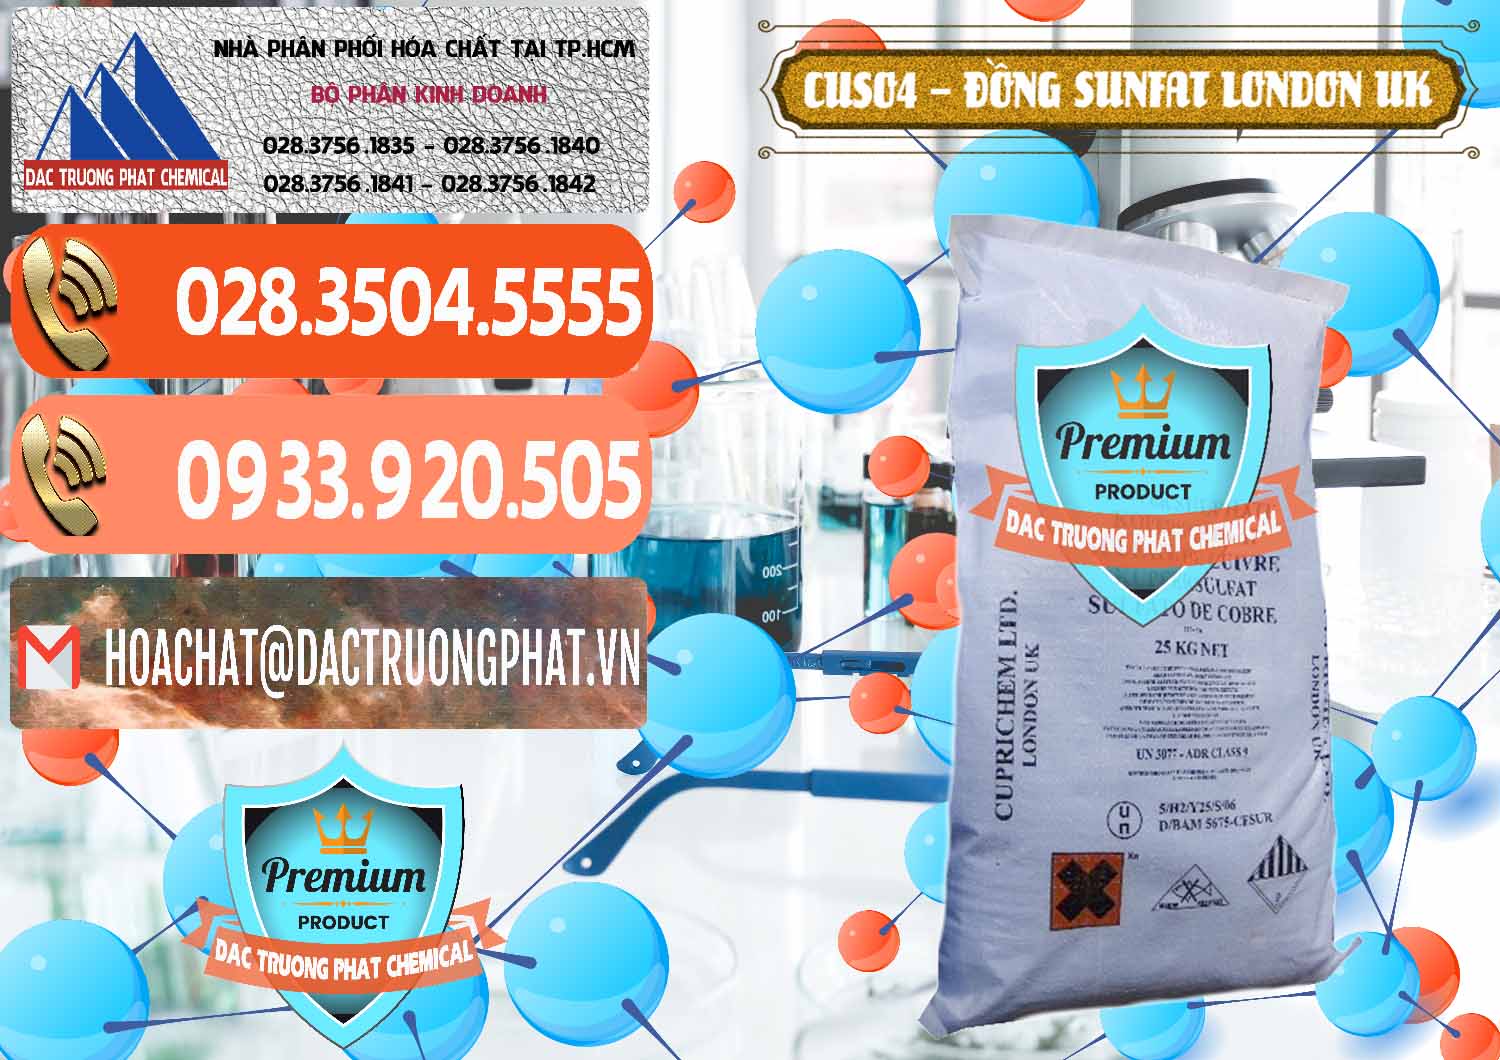 Đơn vị chuyên cung cấp & bán CuSO4 – Đồng Sunfat Anh Uk Kingdoms - 0478 - Cty phân phối _ nhập khẩu hóa chất tại TP.HCM - hoachatmientay.com